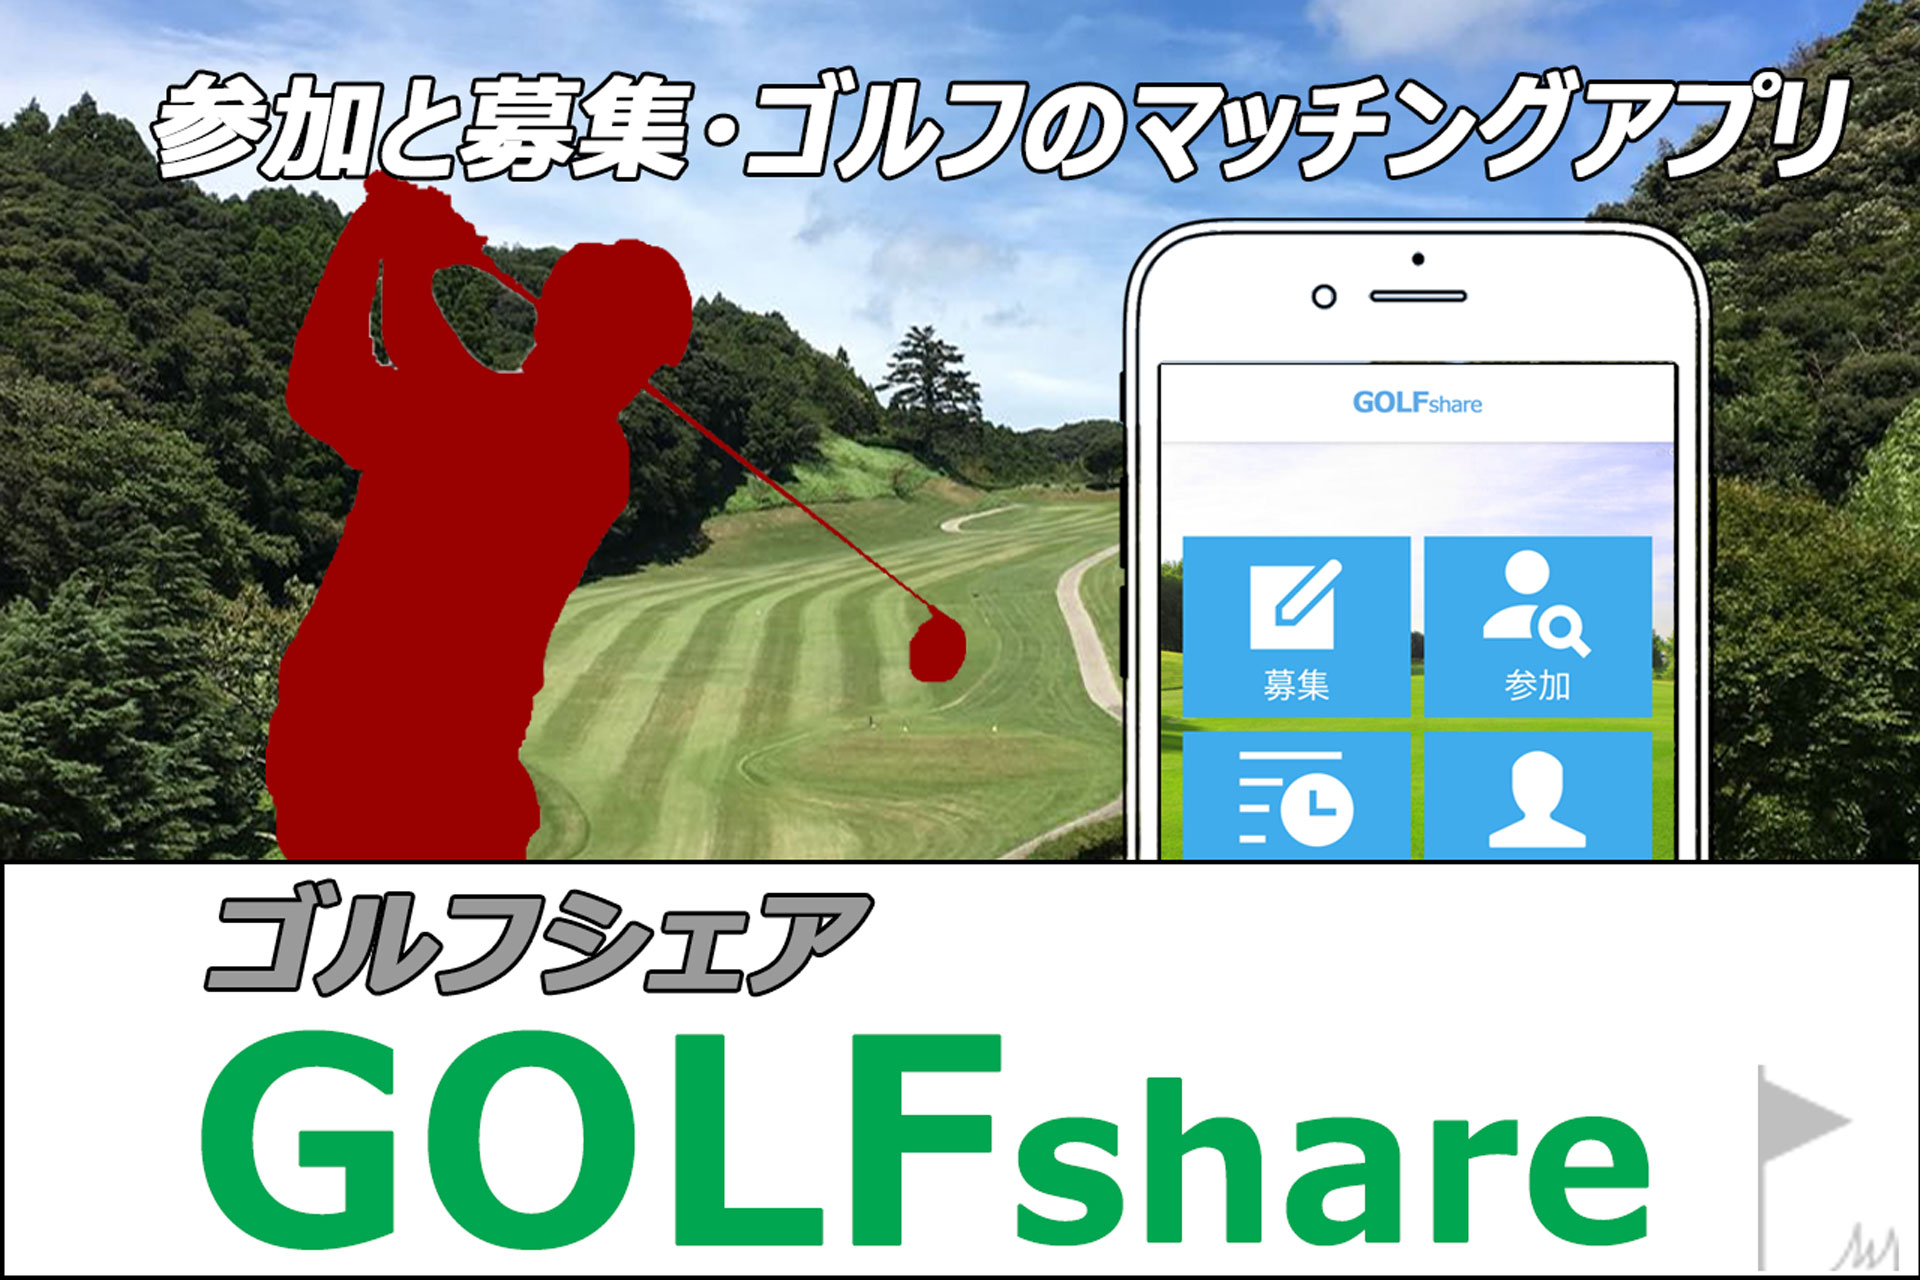 参加と募集・一人ゴルフのマッチングアプリ「ゴルフシェア(GolfShare)」